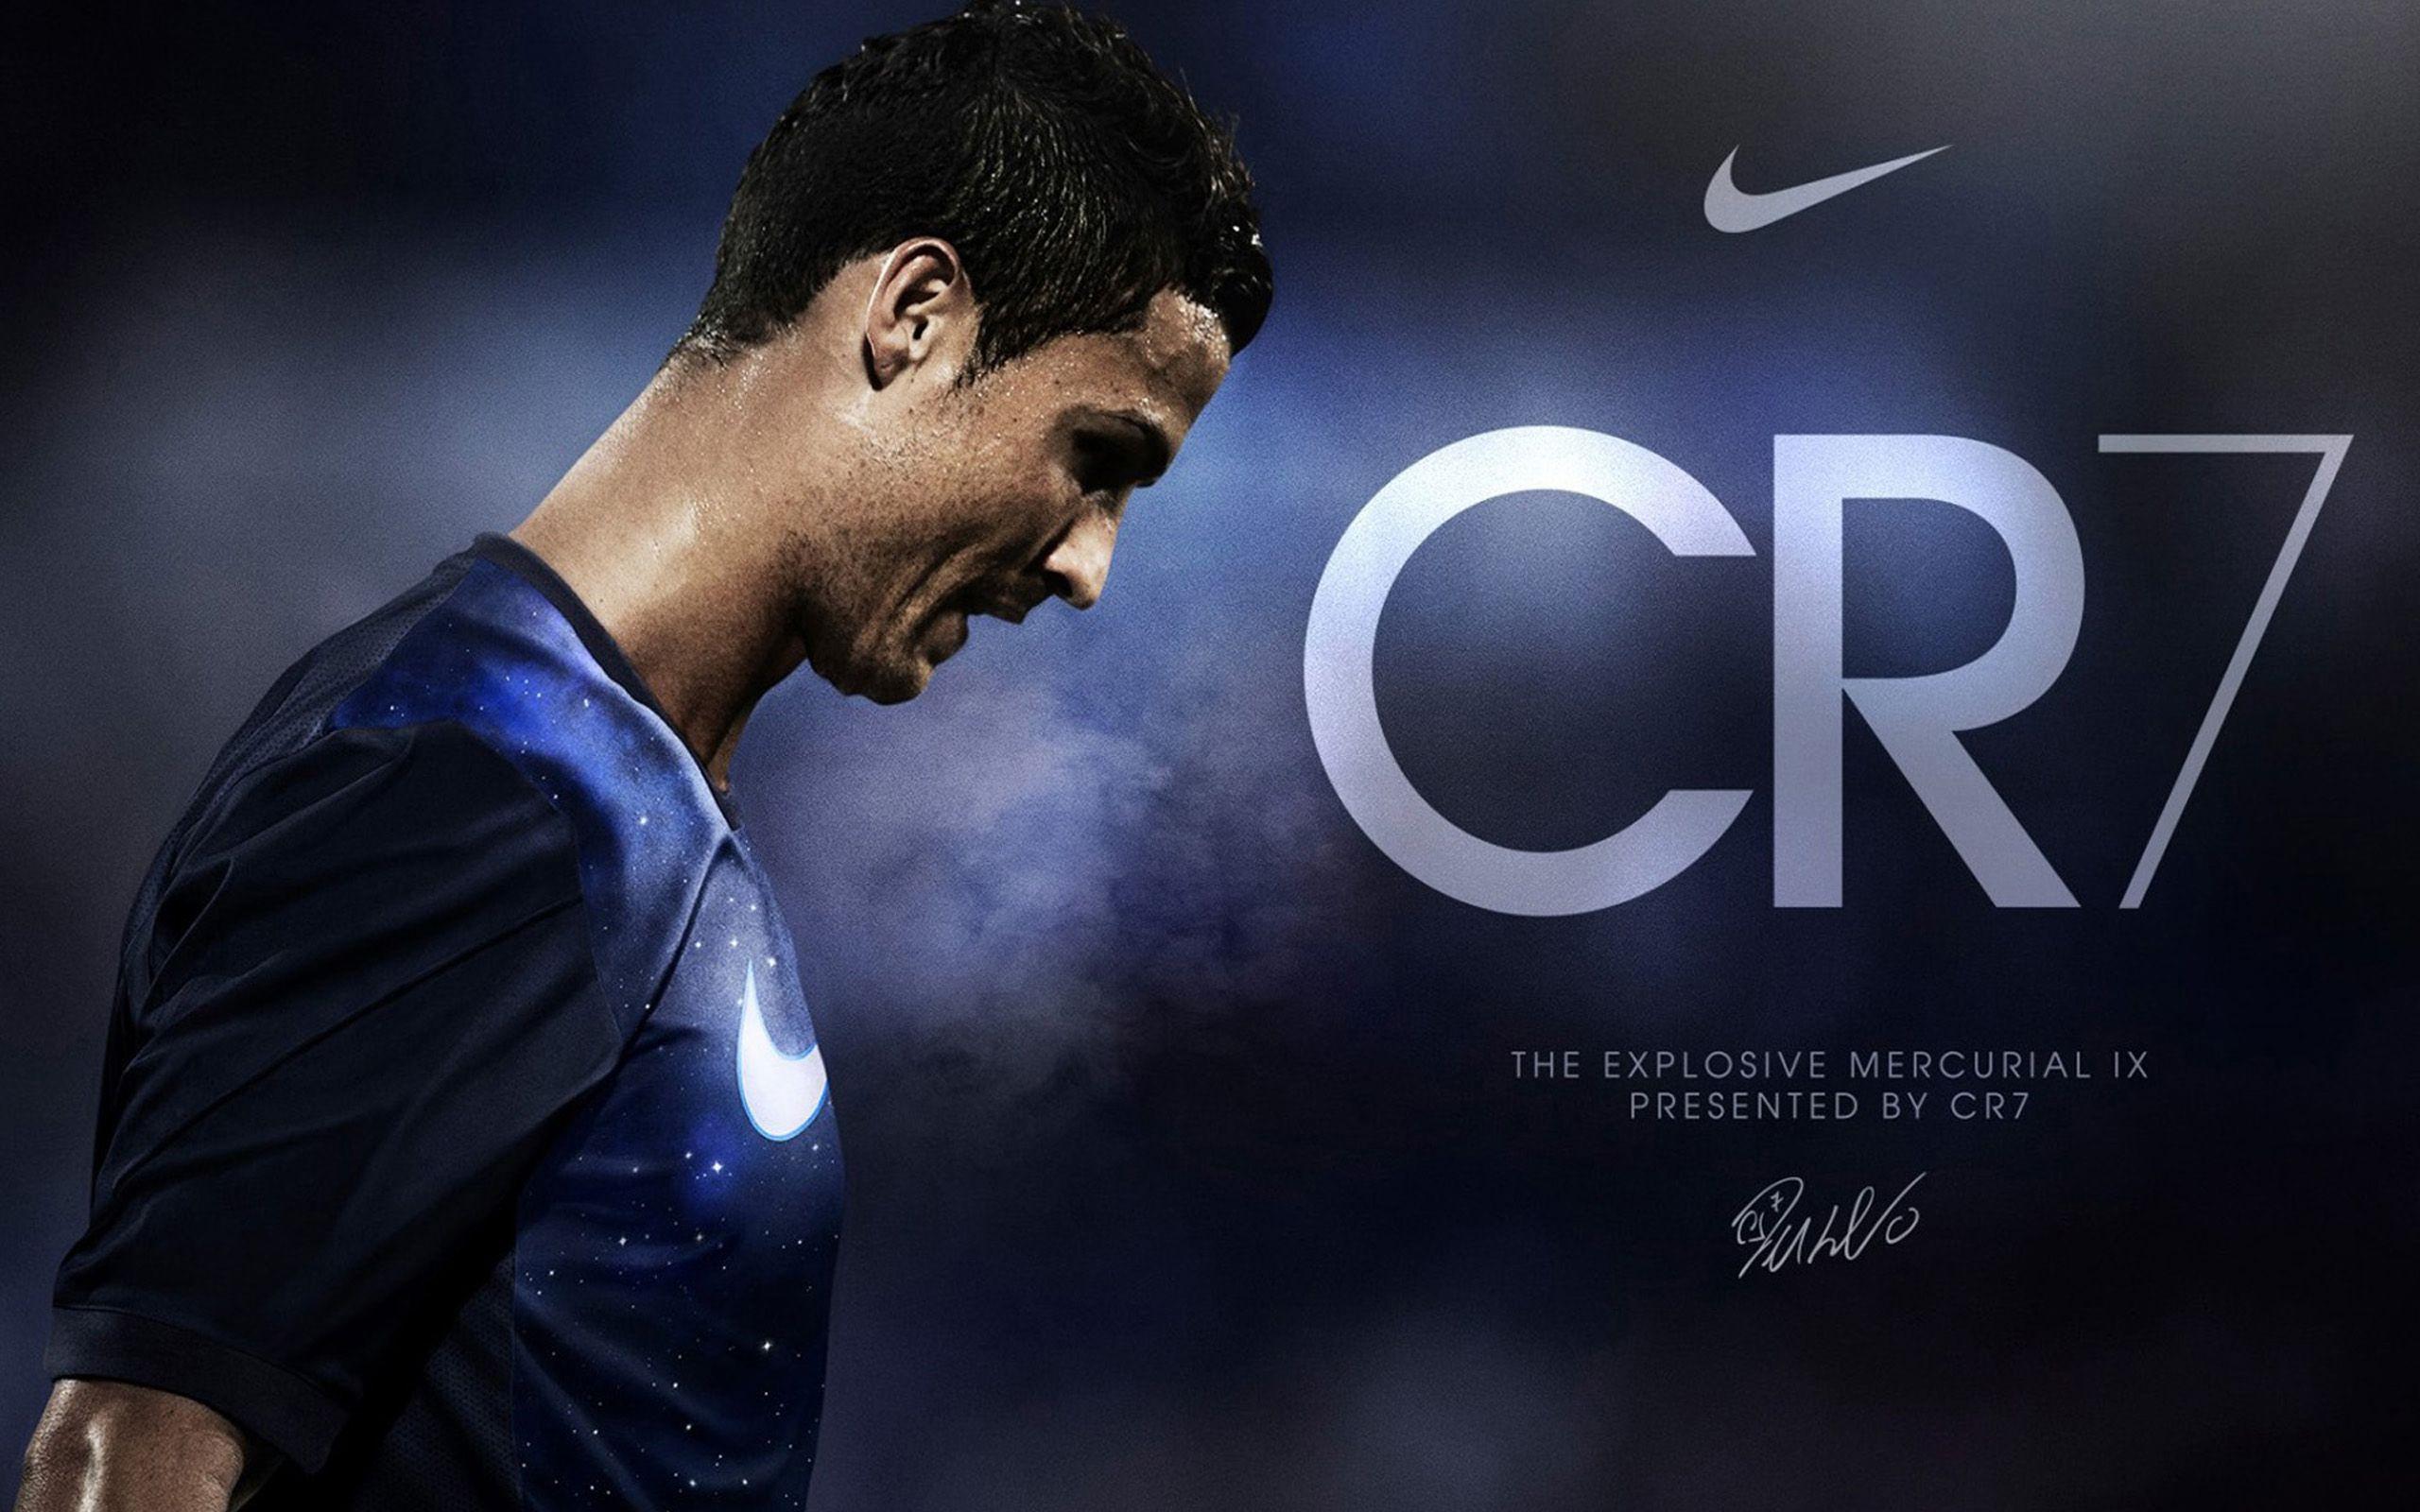 Kumpulan Foto Wallpaper CR7 Atau Cristiano Ronaldo Musim Terbaru